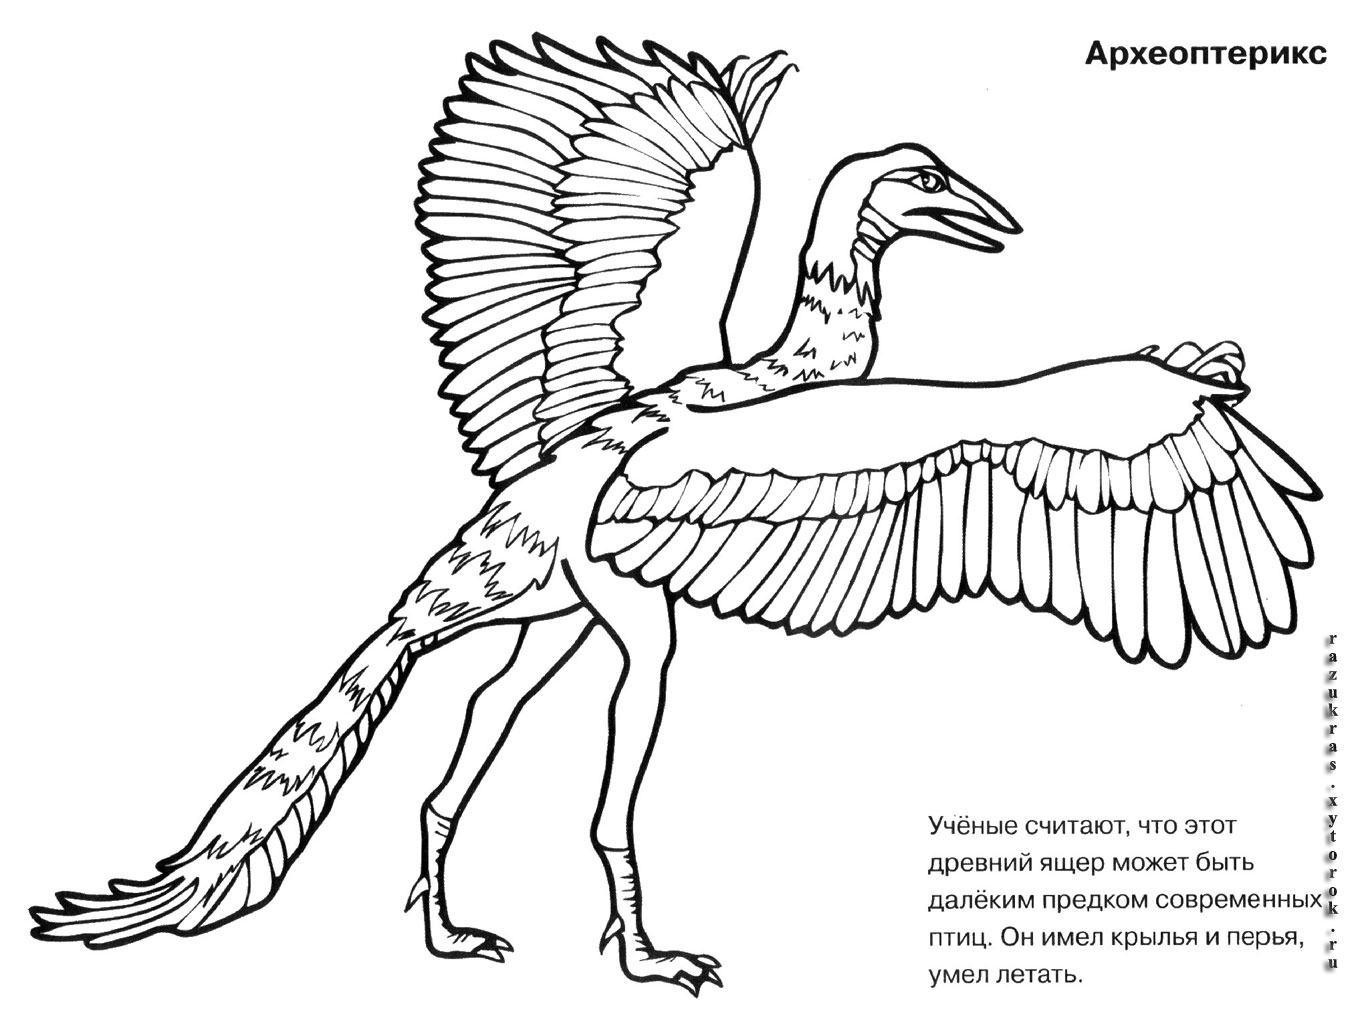 Раскраски динозавра археоптерикса Археоптерикс для детей. 